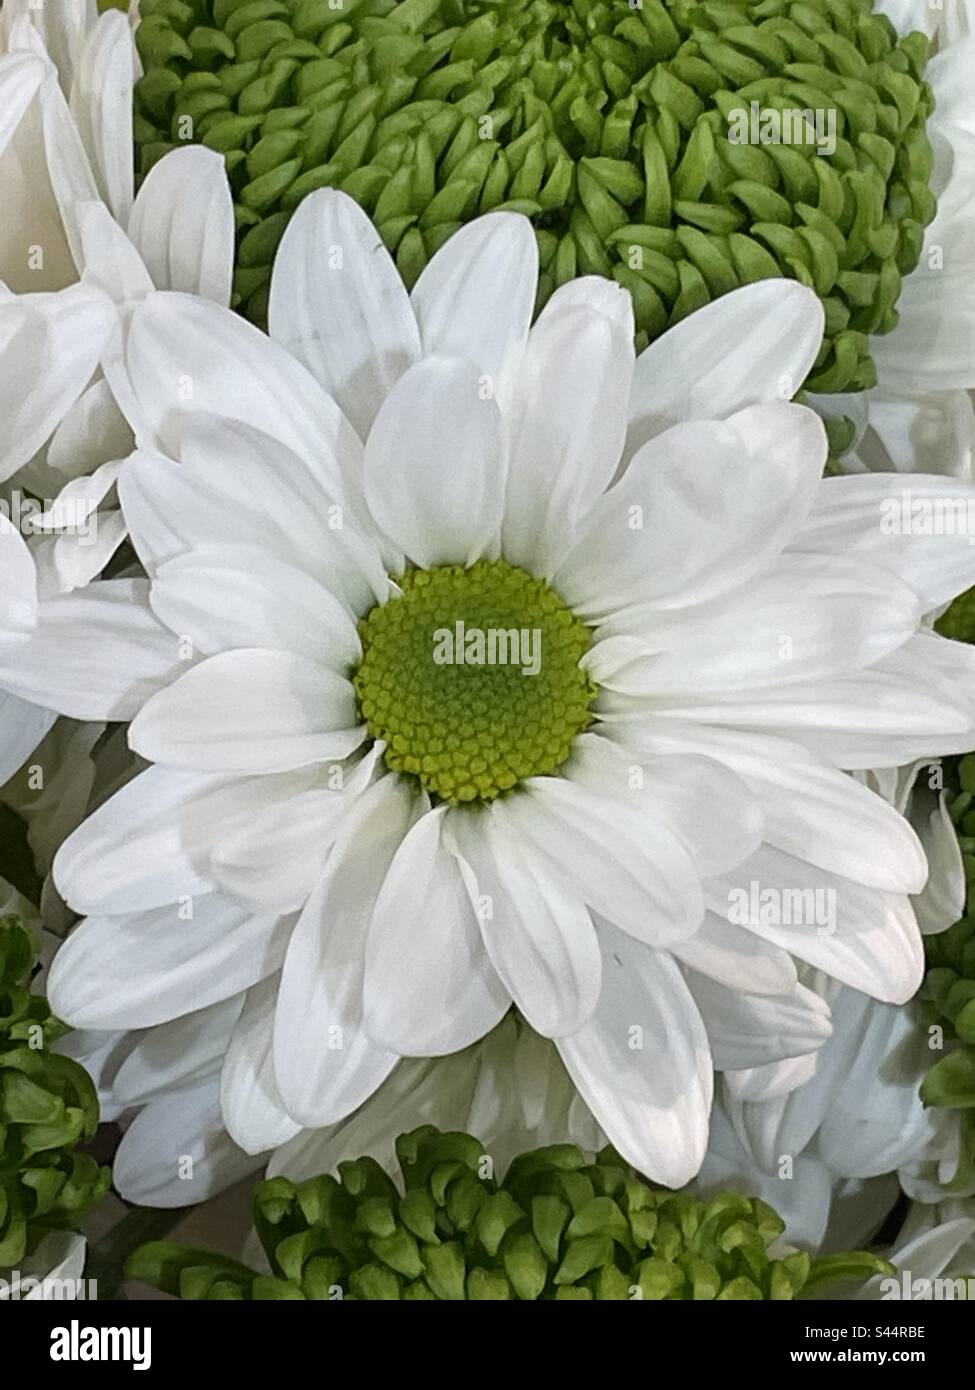 Wunderschöne weiße Blume wie eine Gänseblümchen mit hübschen grünen Chrysanthemen im Hintergrund Stockfoto